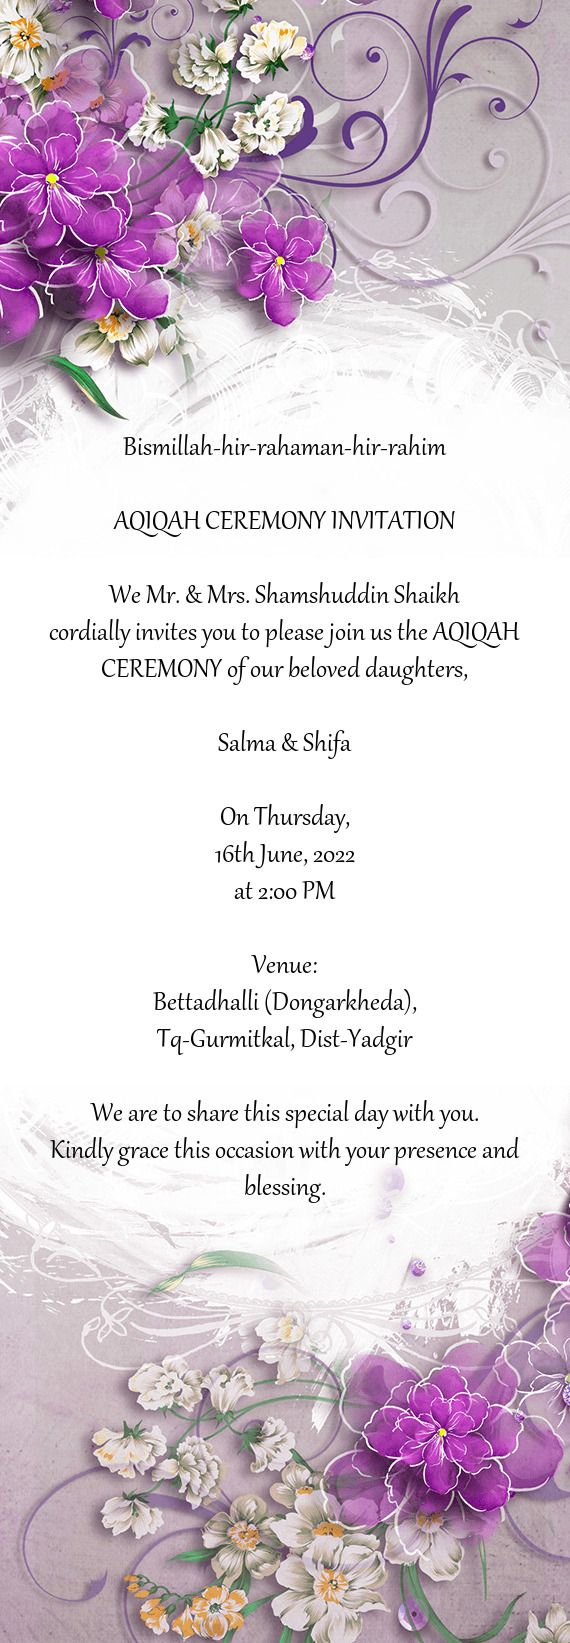 We Mr. & Mrs. Shamshuddin Shaikh